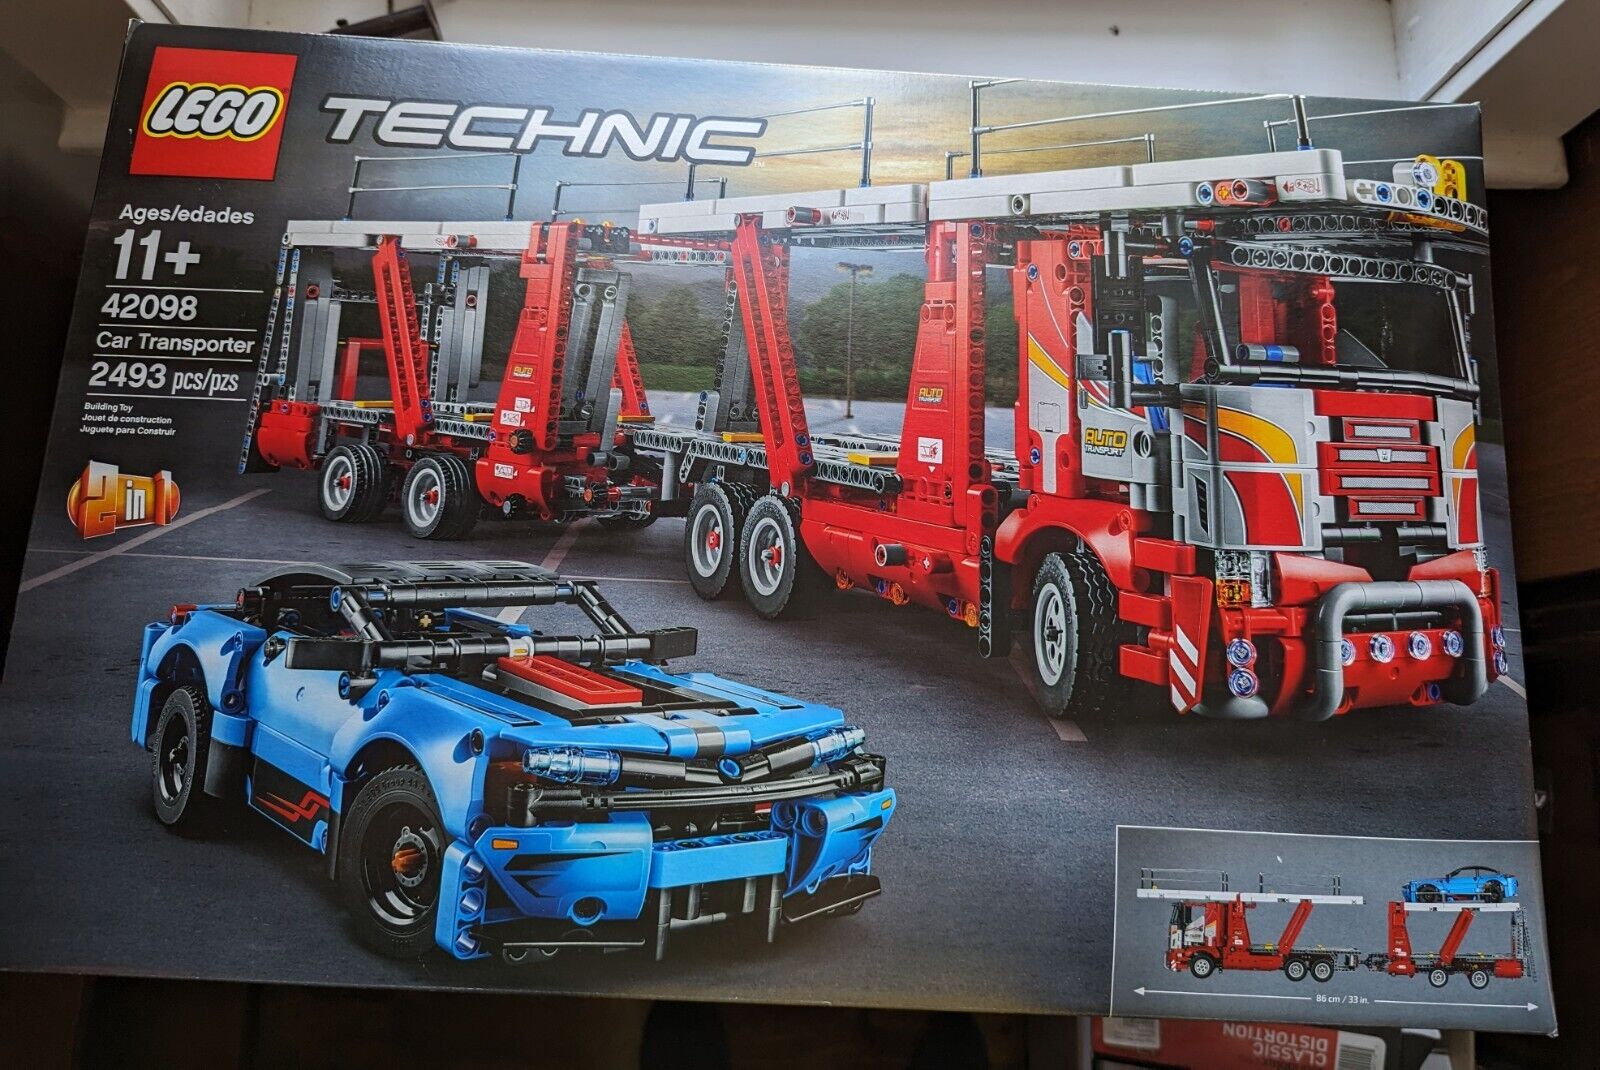 !!BNIB!! LEGO TECHNIC: Car Transporter (42098) NEW